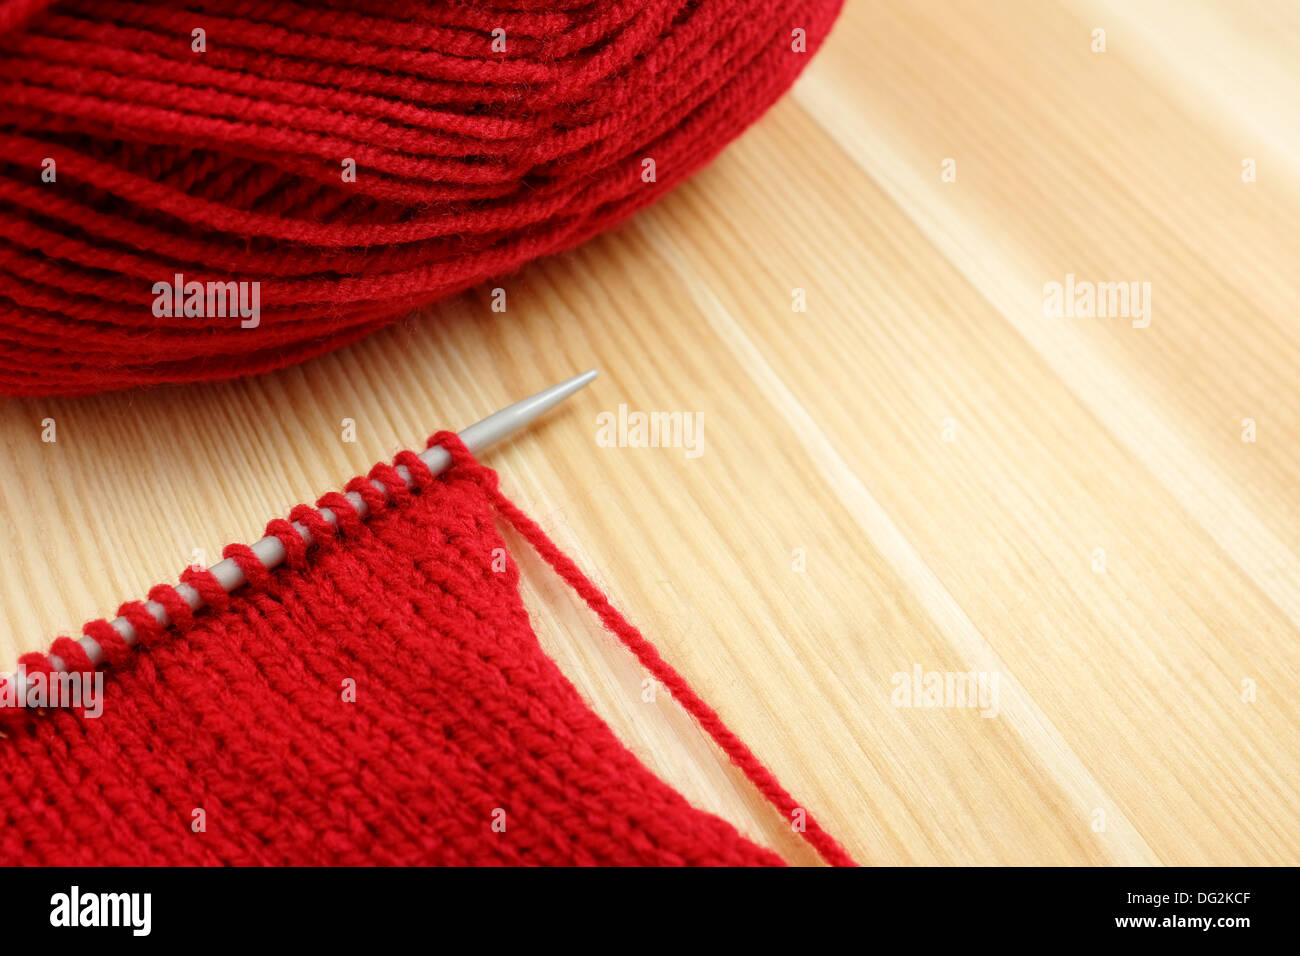 Stocking stitch en la aguja de tejer con la bola de lana roja, en Pine junta Foto de stock